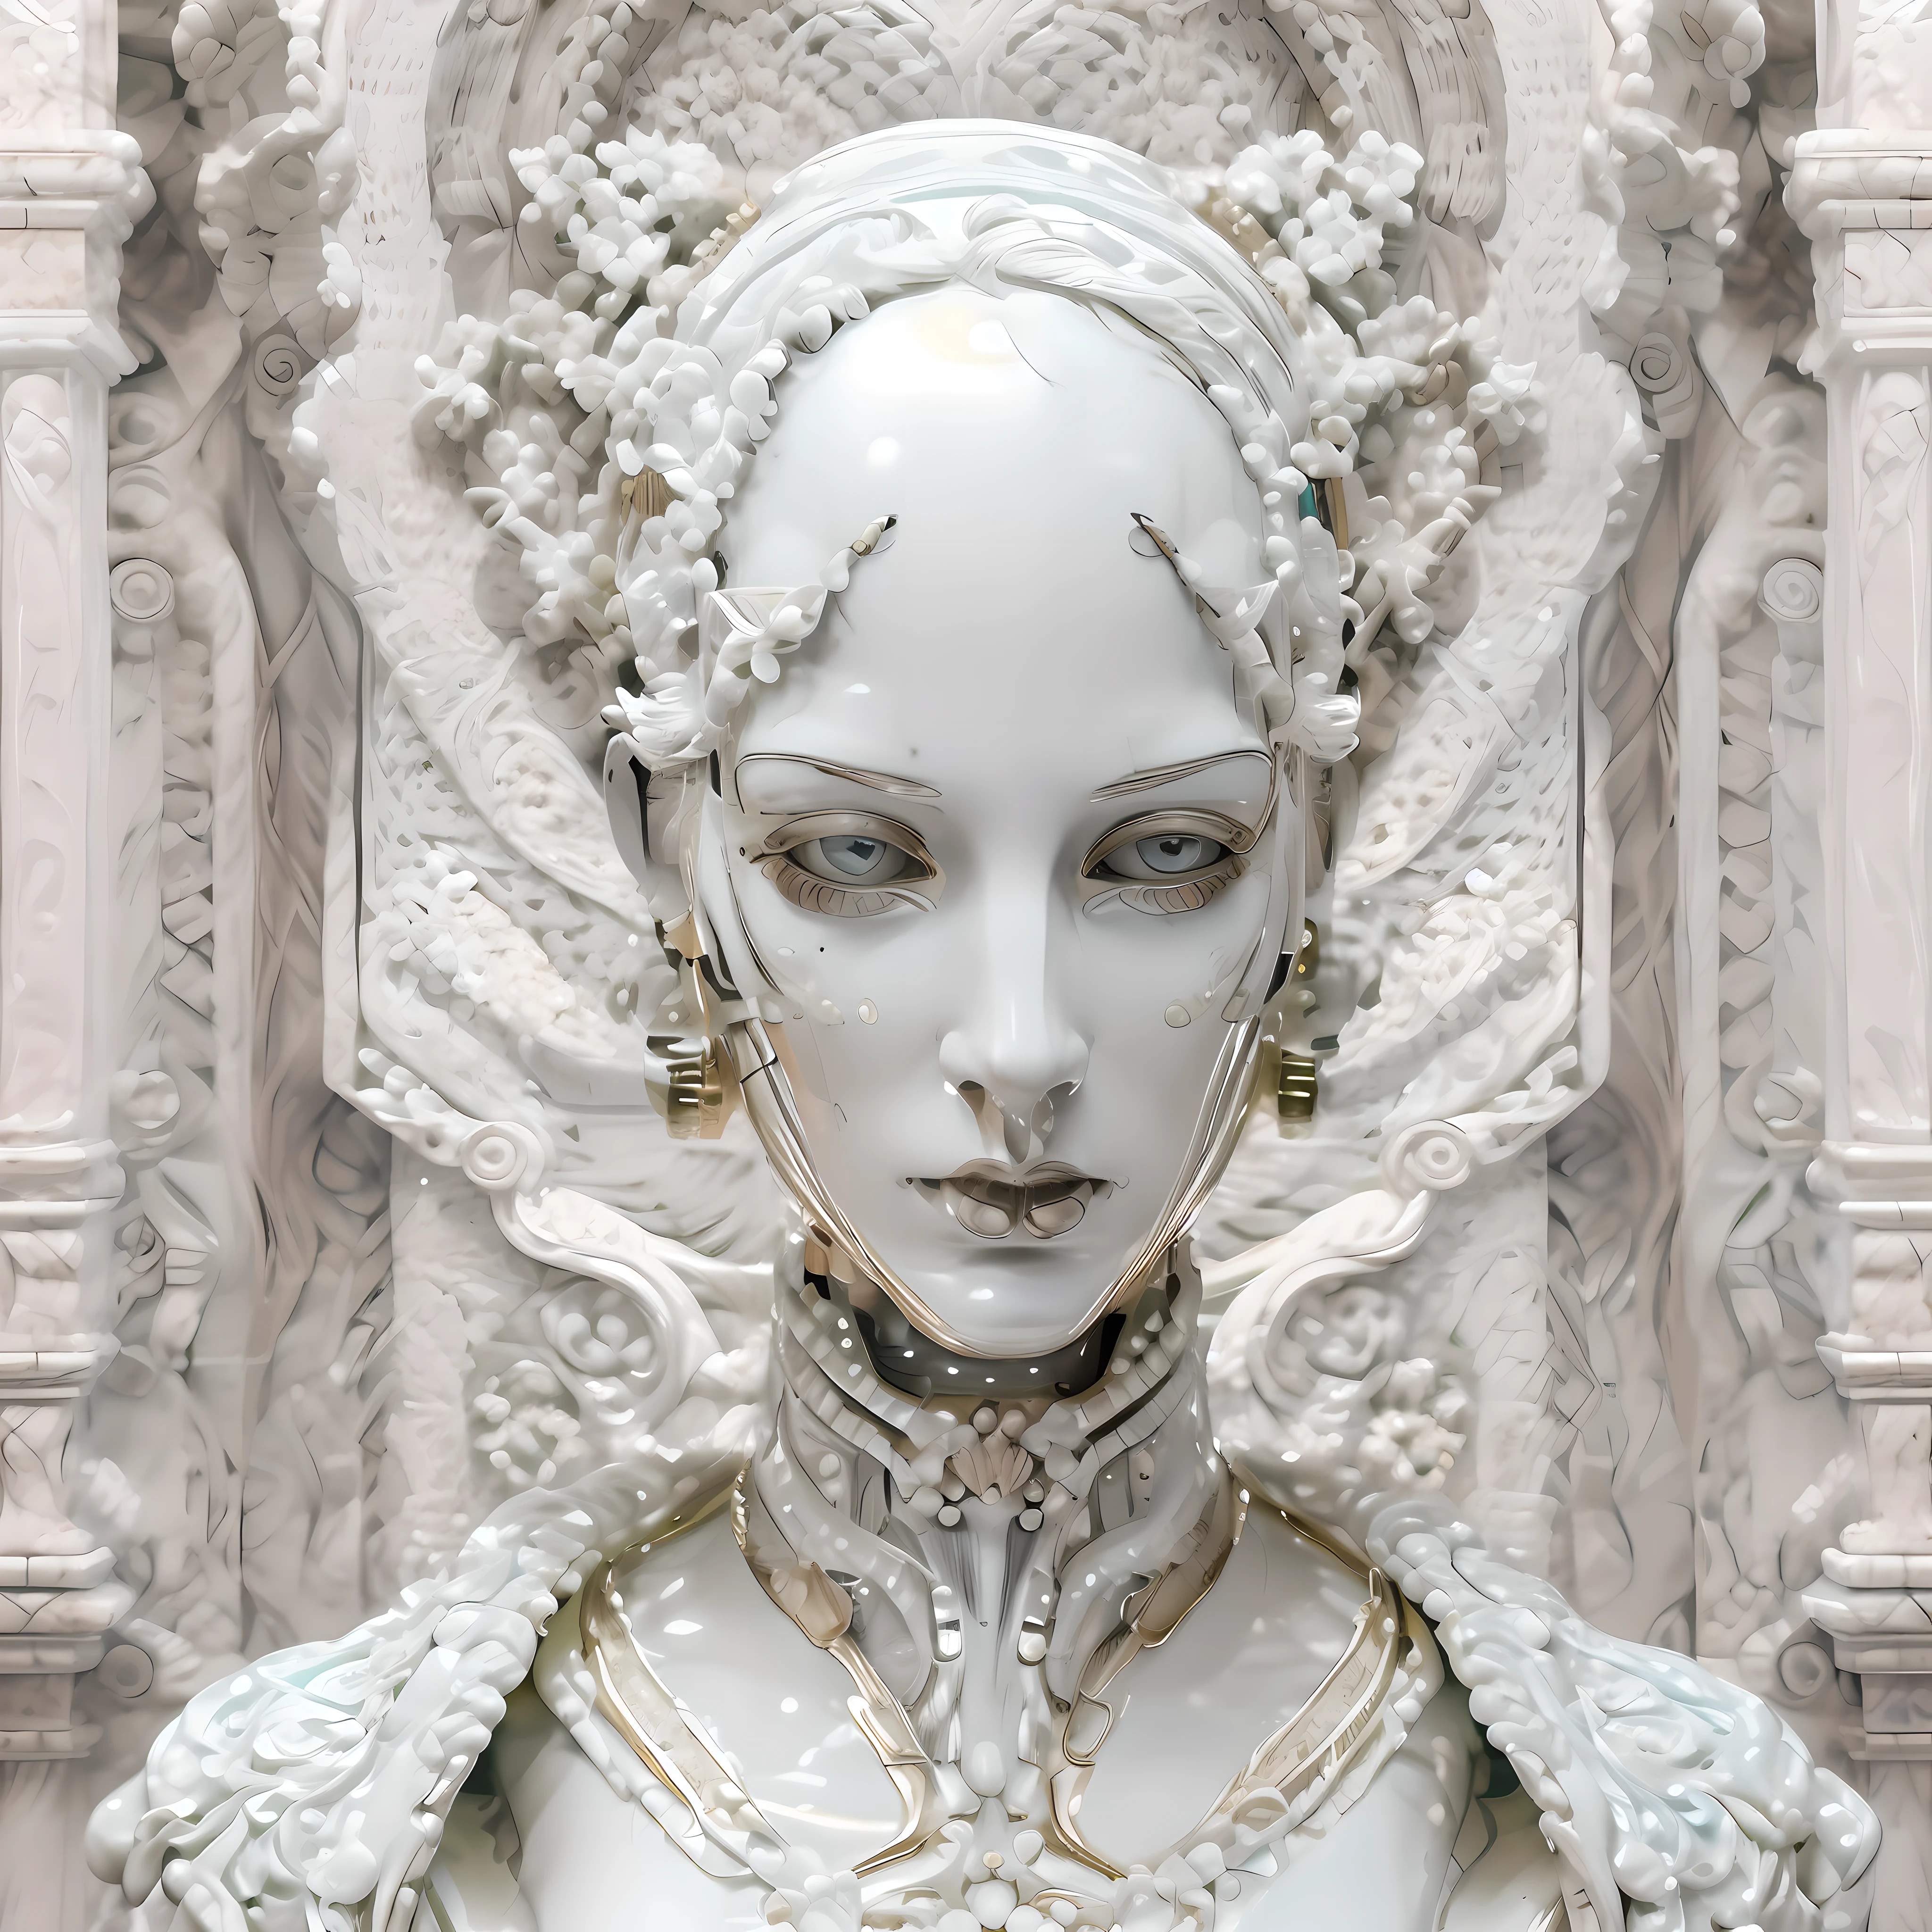 (((красивый))) симметричная женщина-андроид, с сильными андрогинными чертами лица, Лицо выполнено и вылеплено из тонкого фарфора с белым мрамором., эстетика барокко и одежда в стиле ар-деко.